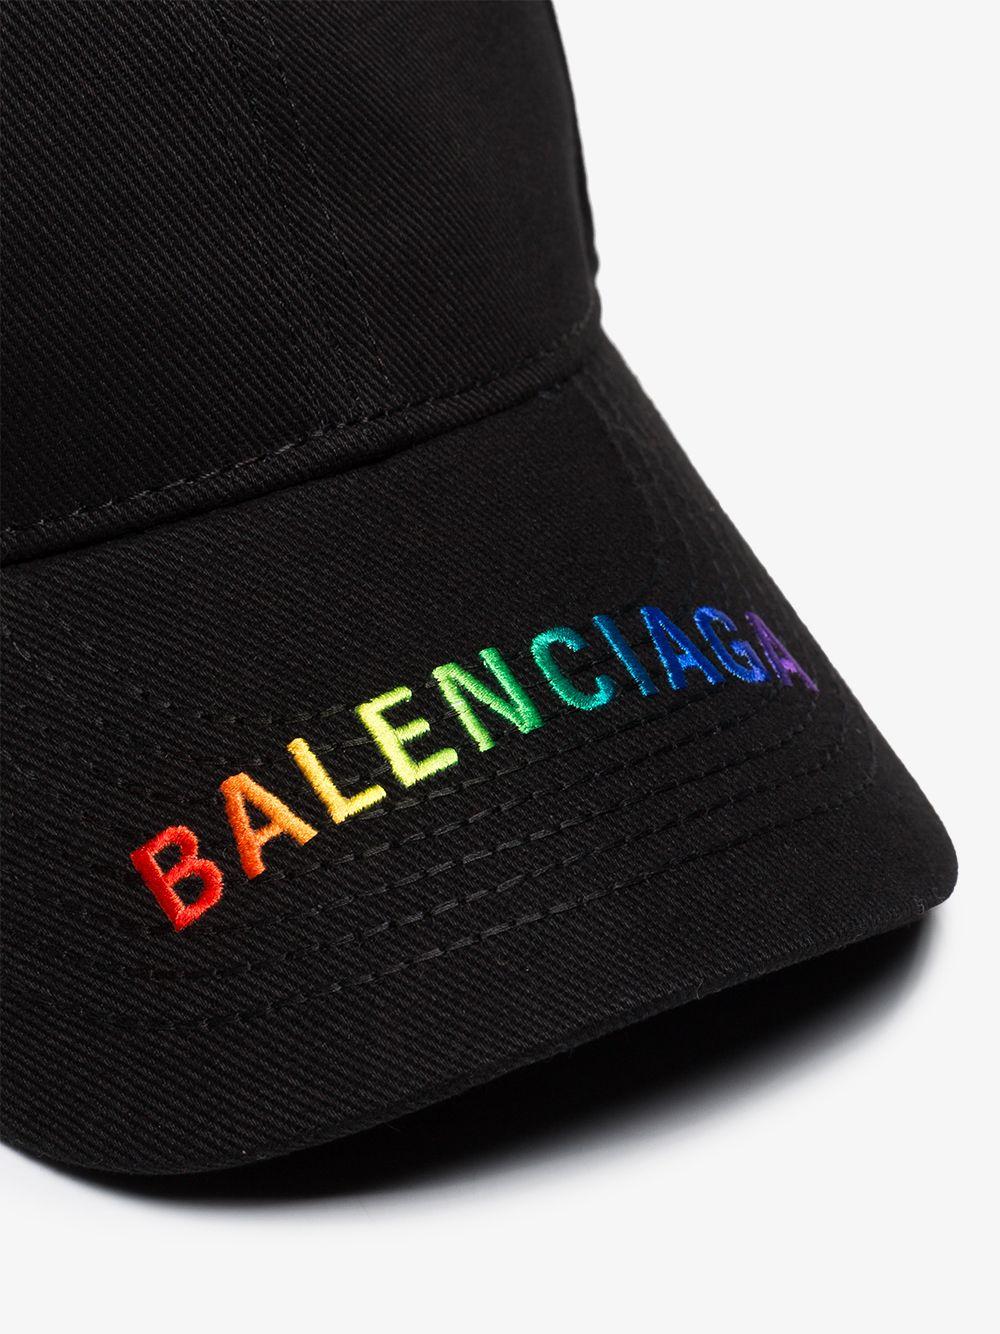 Balenciaga Logo Embroidered Cotton Baseball Cap in Black for Men - Lyst